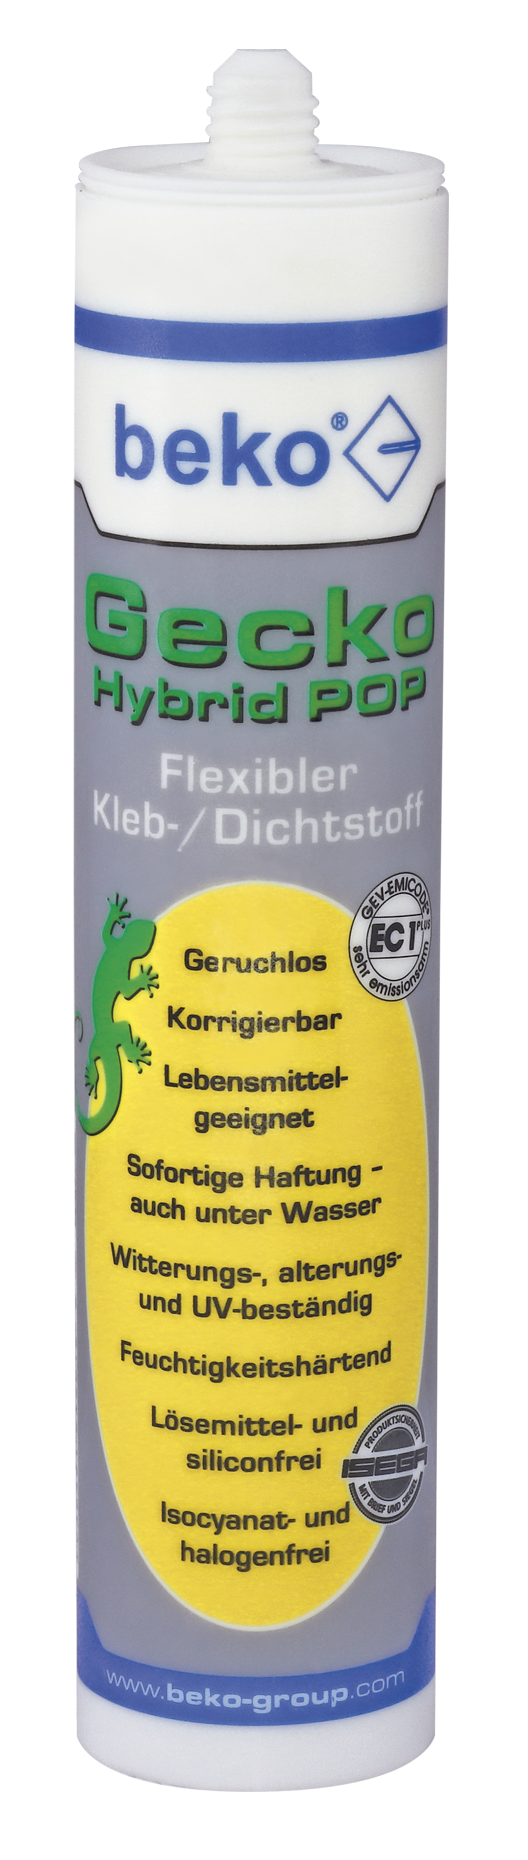 Beko Gecko Hybrid POP 310 ml Grau